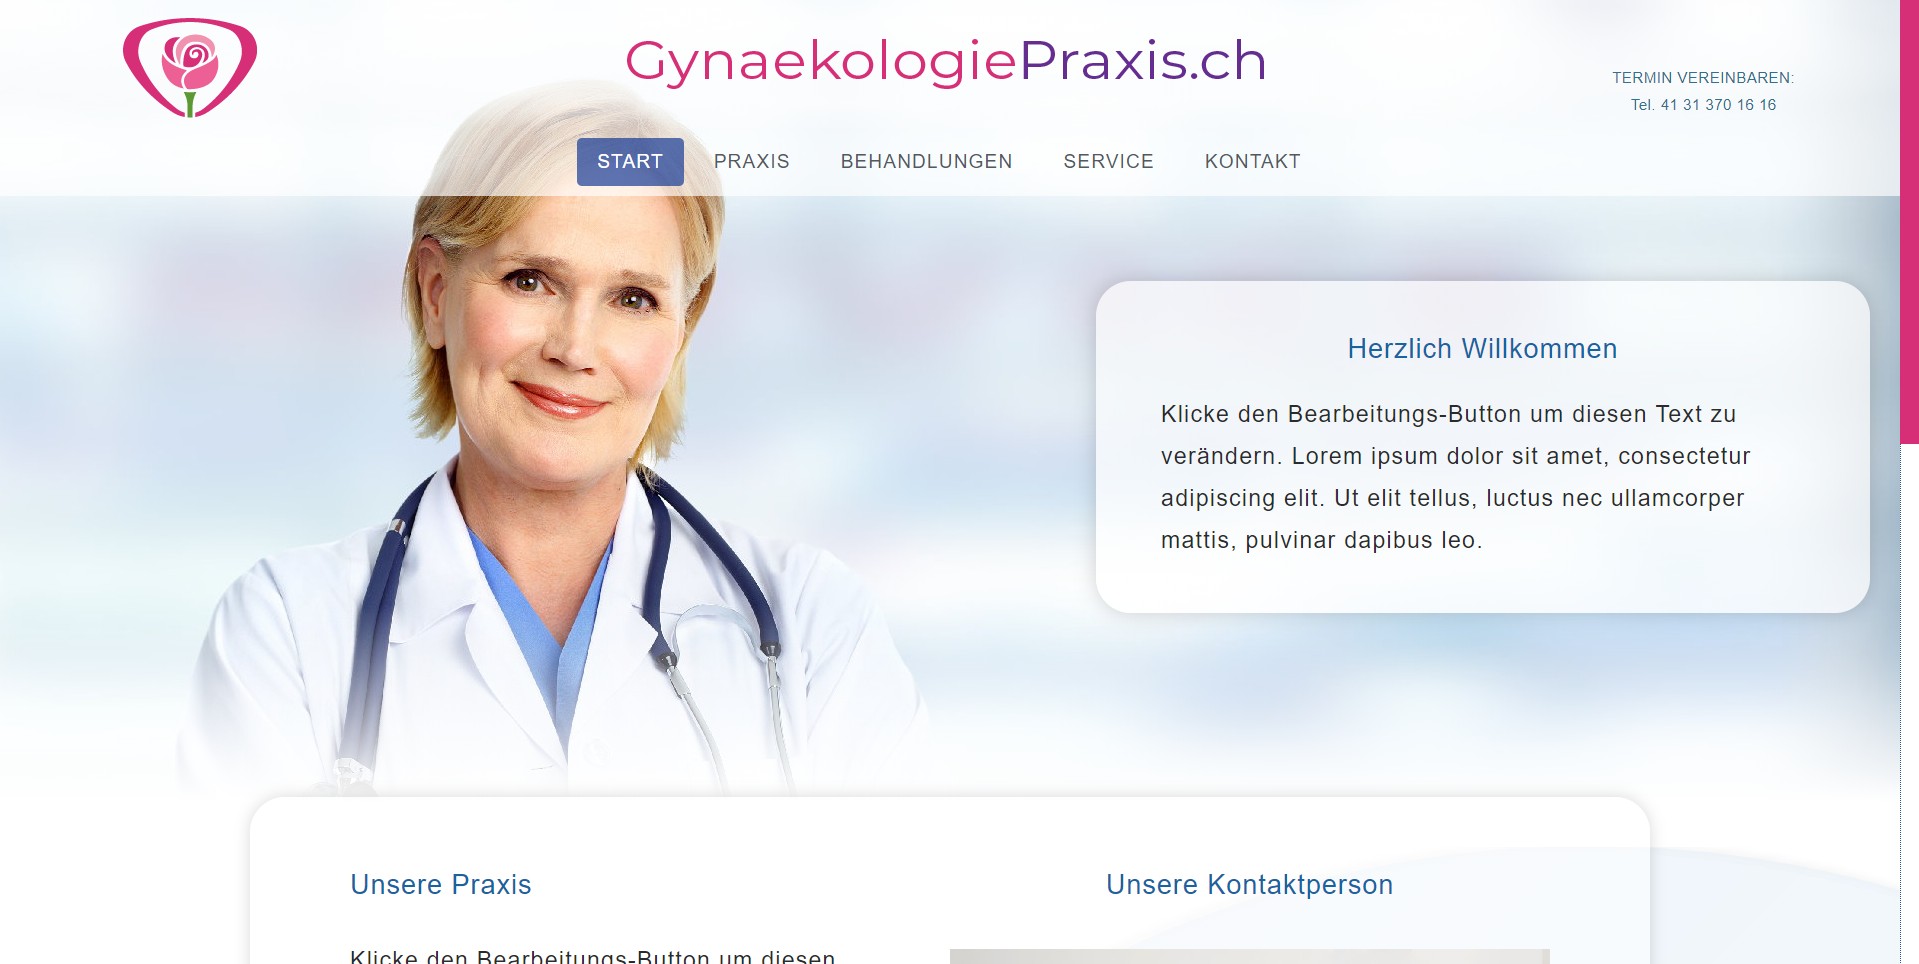 GynaekologiePraxis.ch